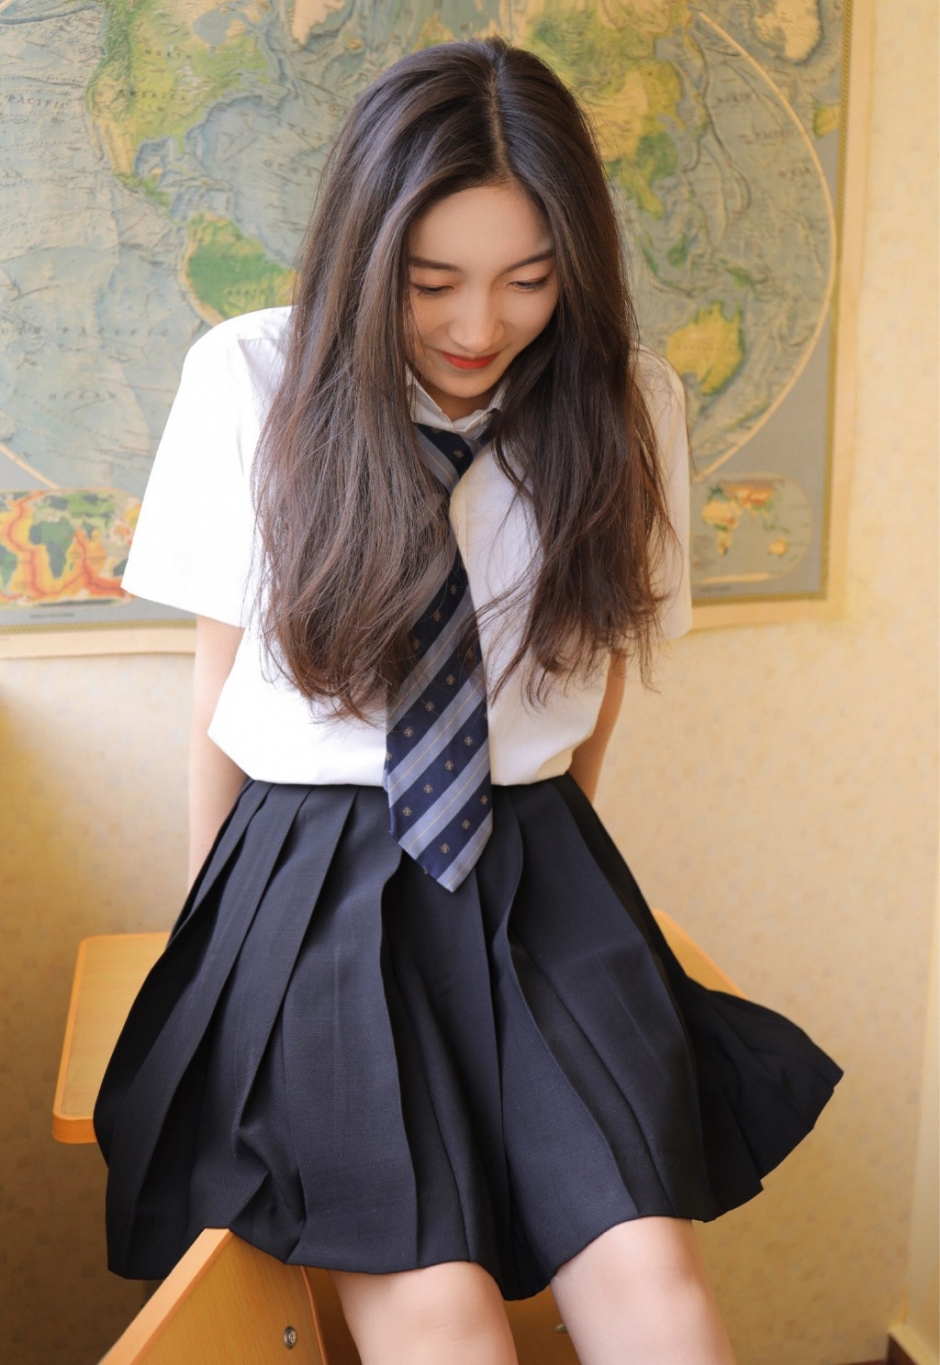 白衬衣美女学生日系jk制服飘逸长发气质淡雅教室写真图片